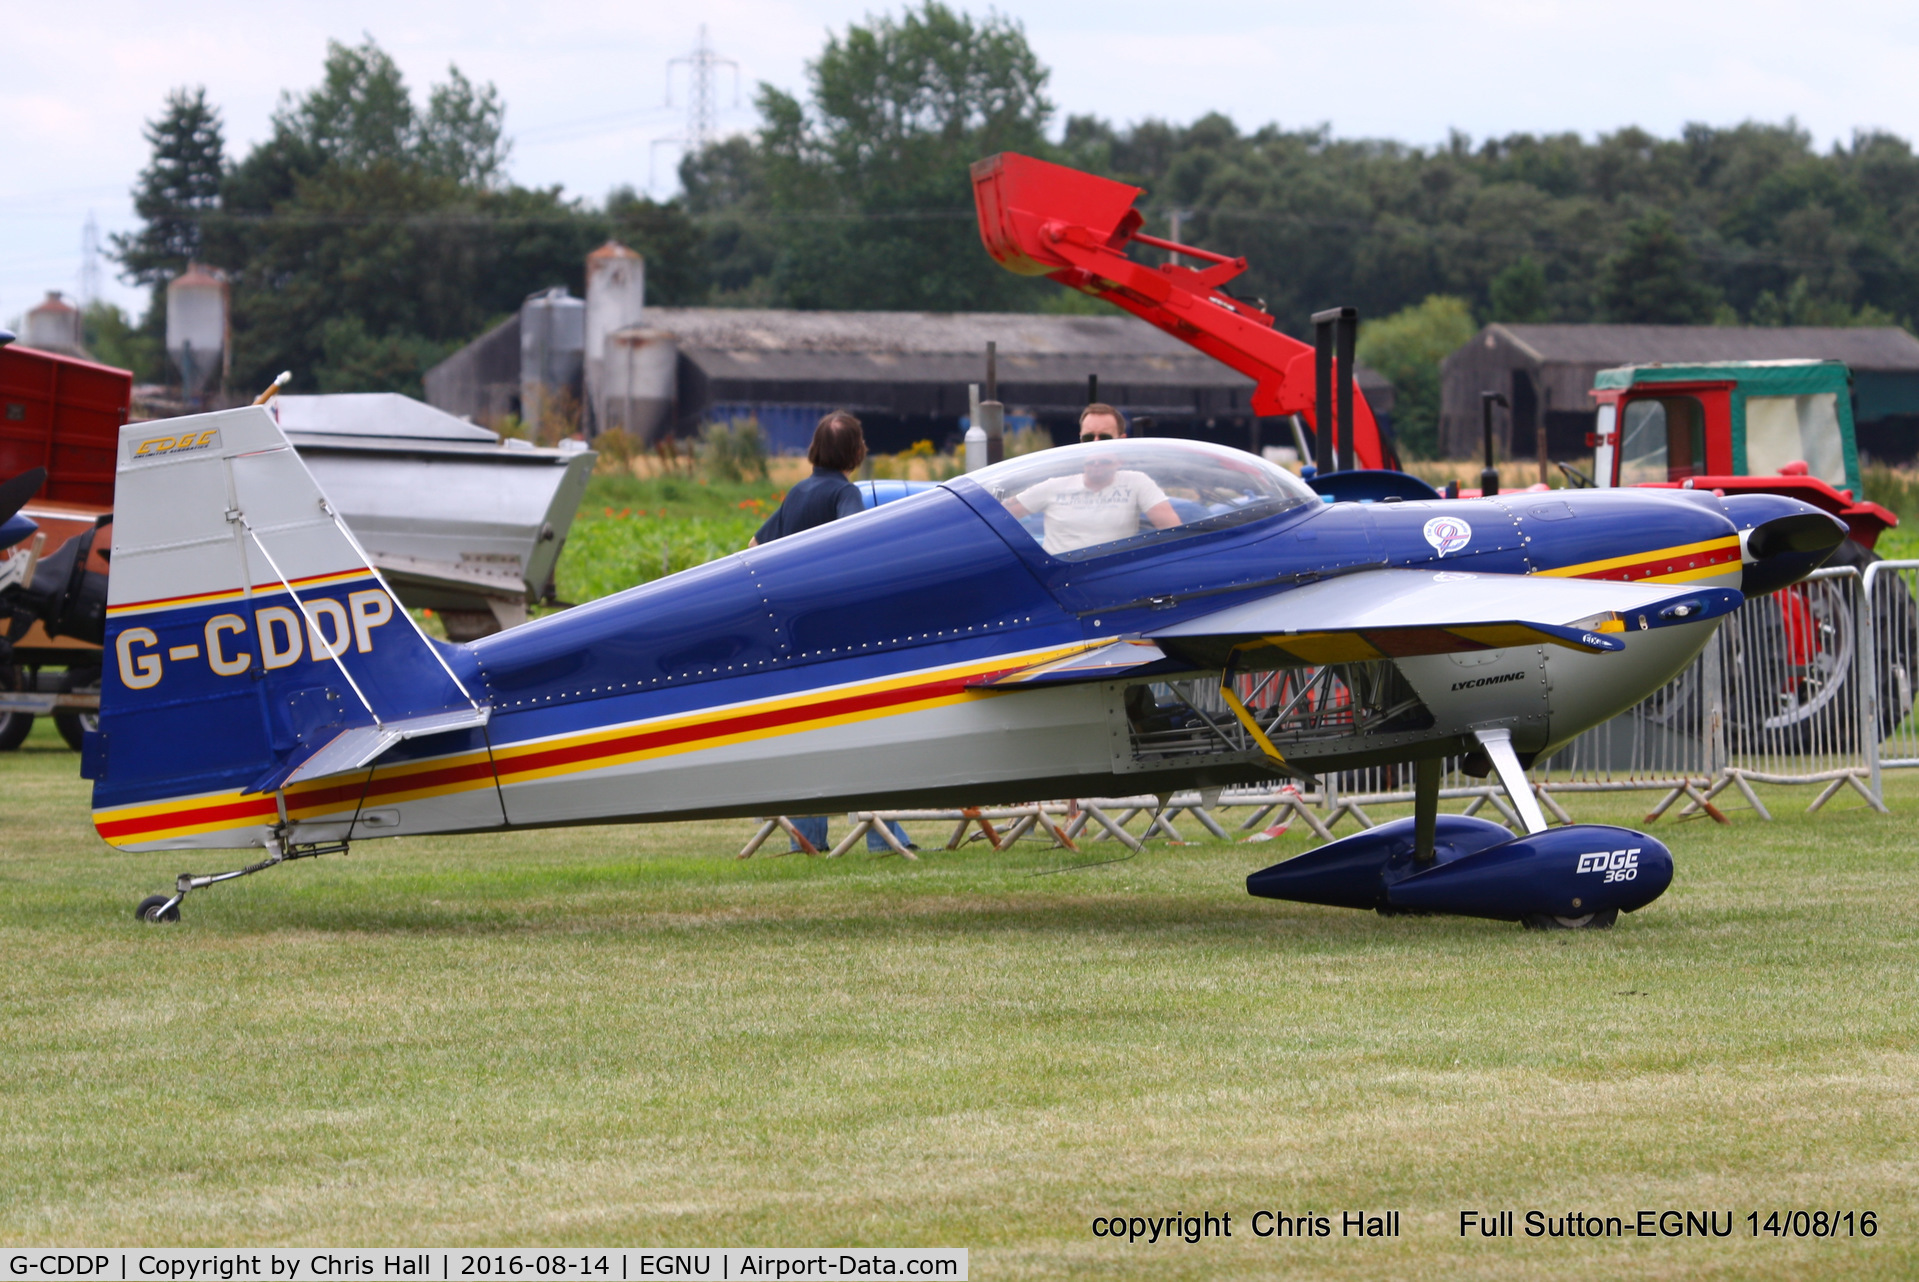 G-CDDP, 1993 Stephens Akro Laser Z230 C/N 001, at the LAA Vale of York Strut fly-in, Full Sutton